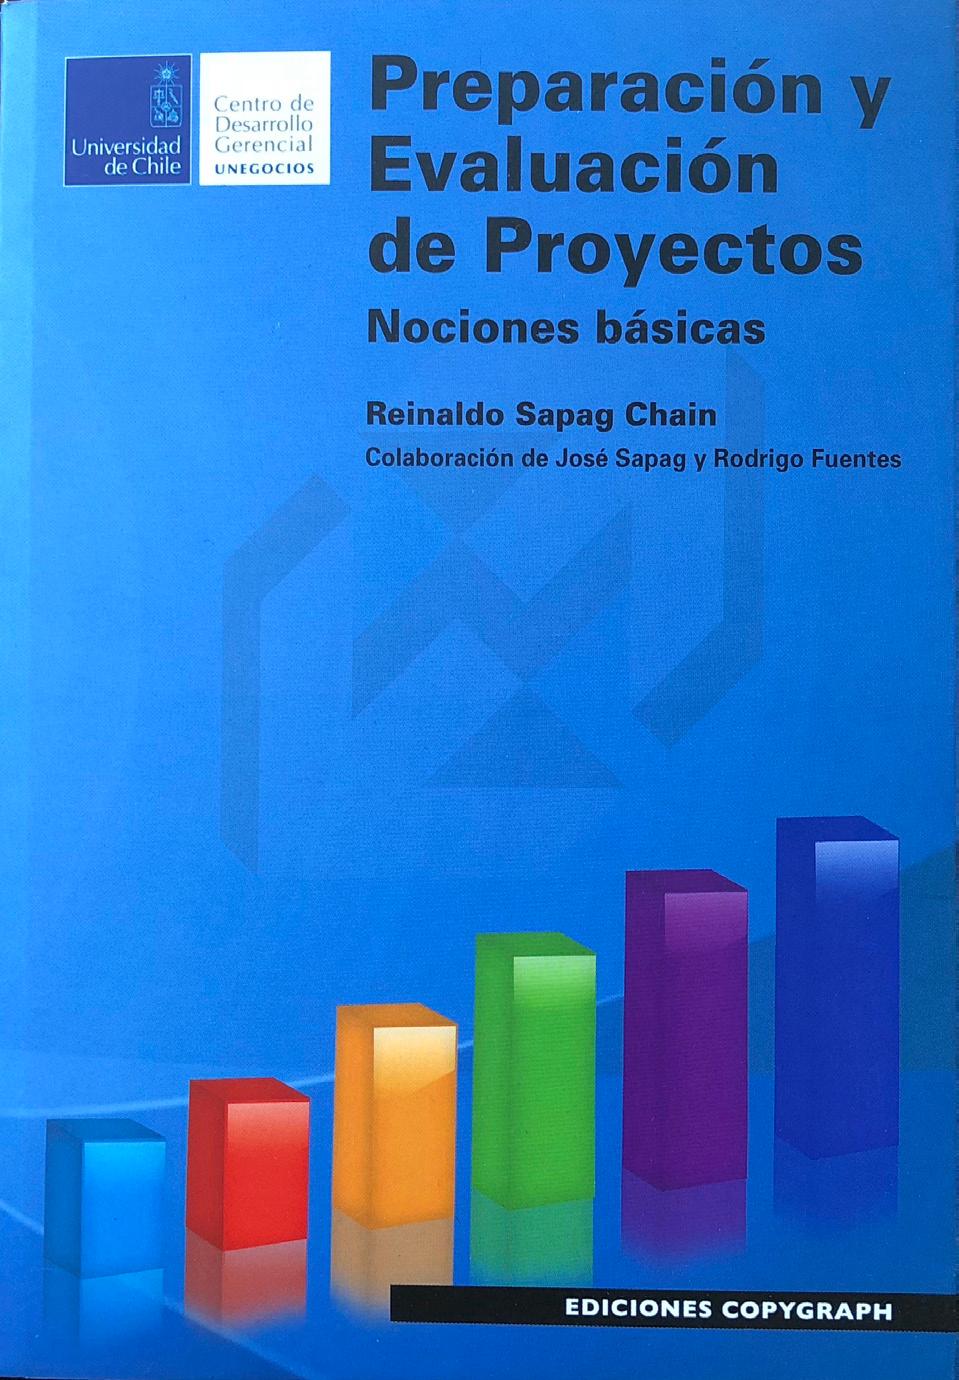 Al momento de la matrícula, todos los alumnos que ingresen al Diploma, recibirán un libro de la autoría del profesor Reinaldo Sapag Chain: Preparación y Evaluación de Proyectos, Nociones Básicas.